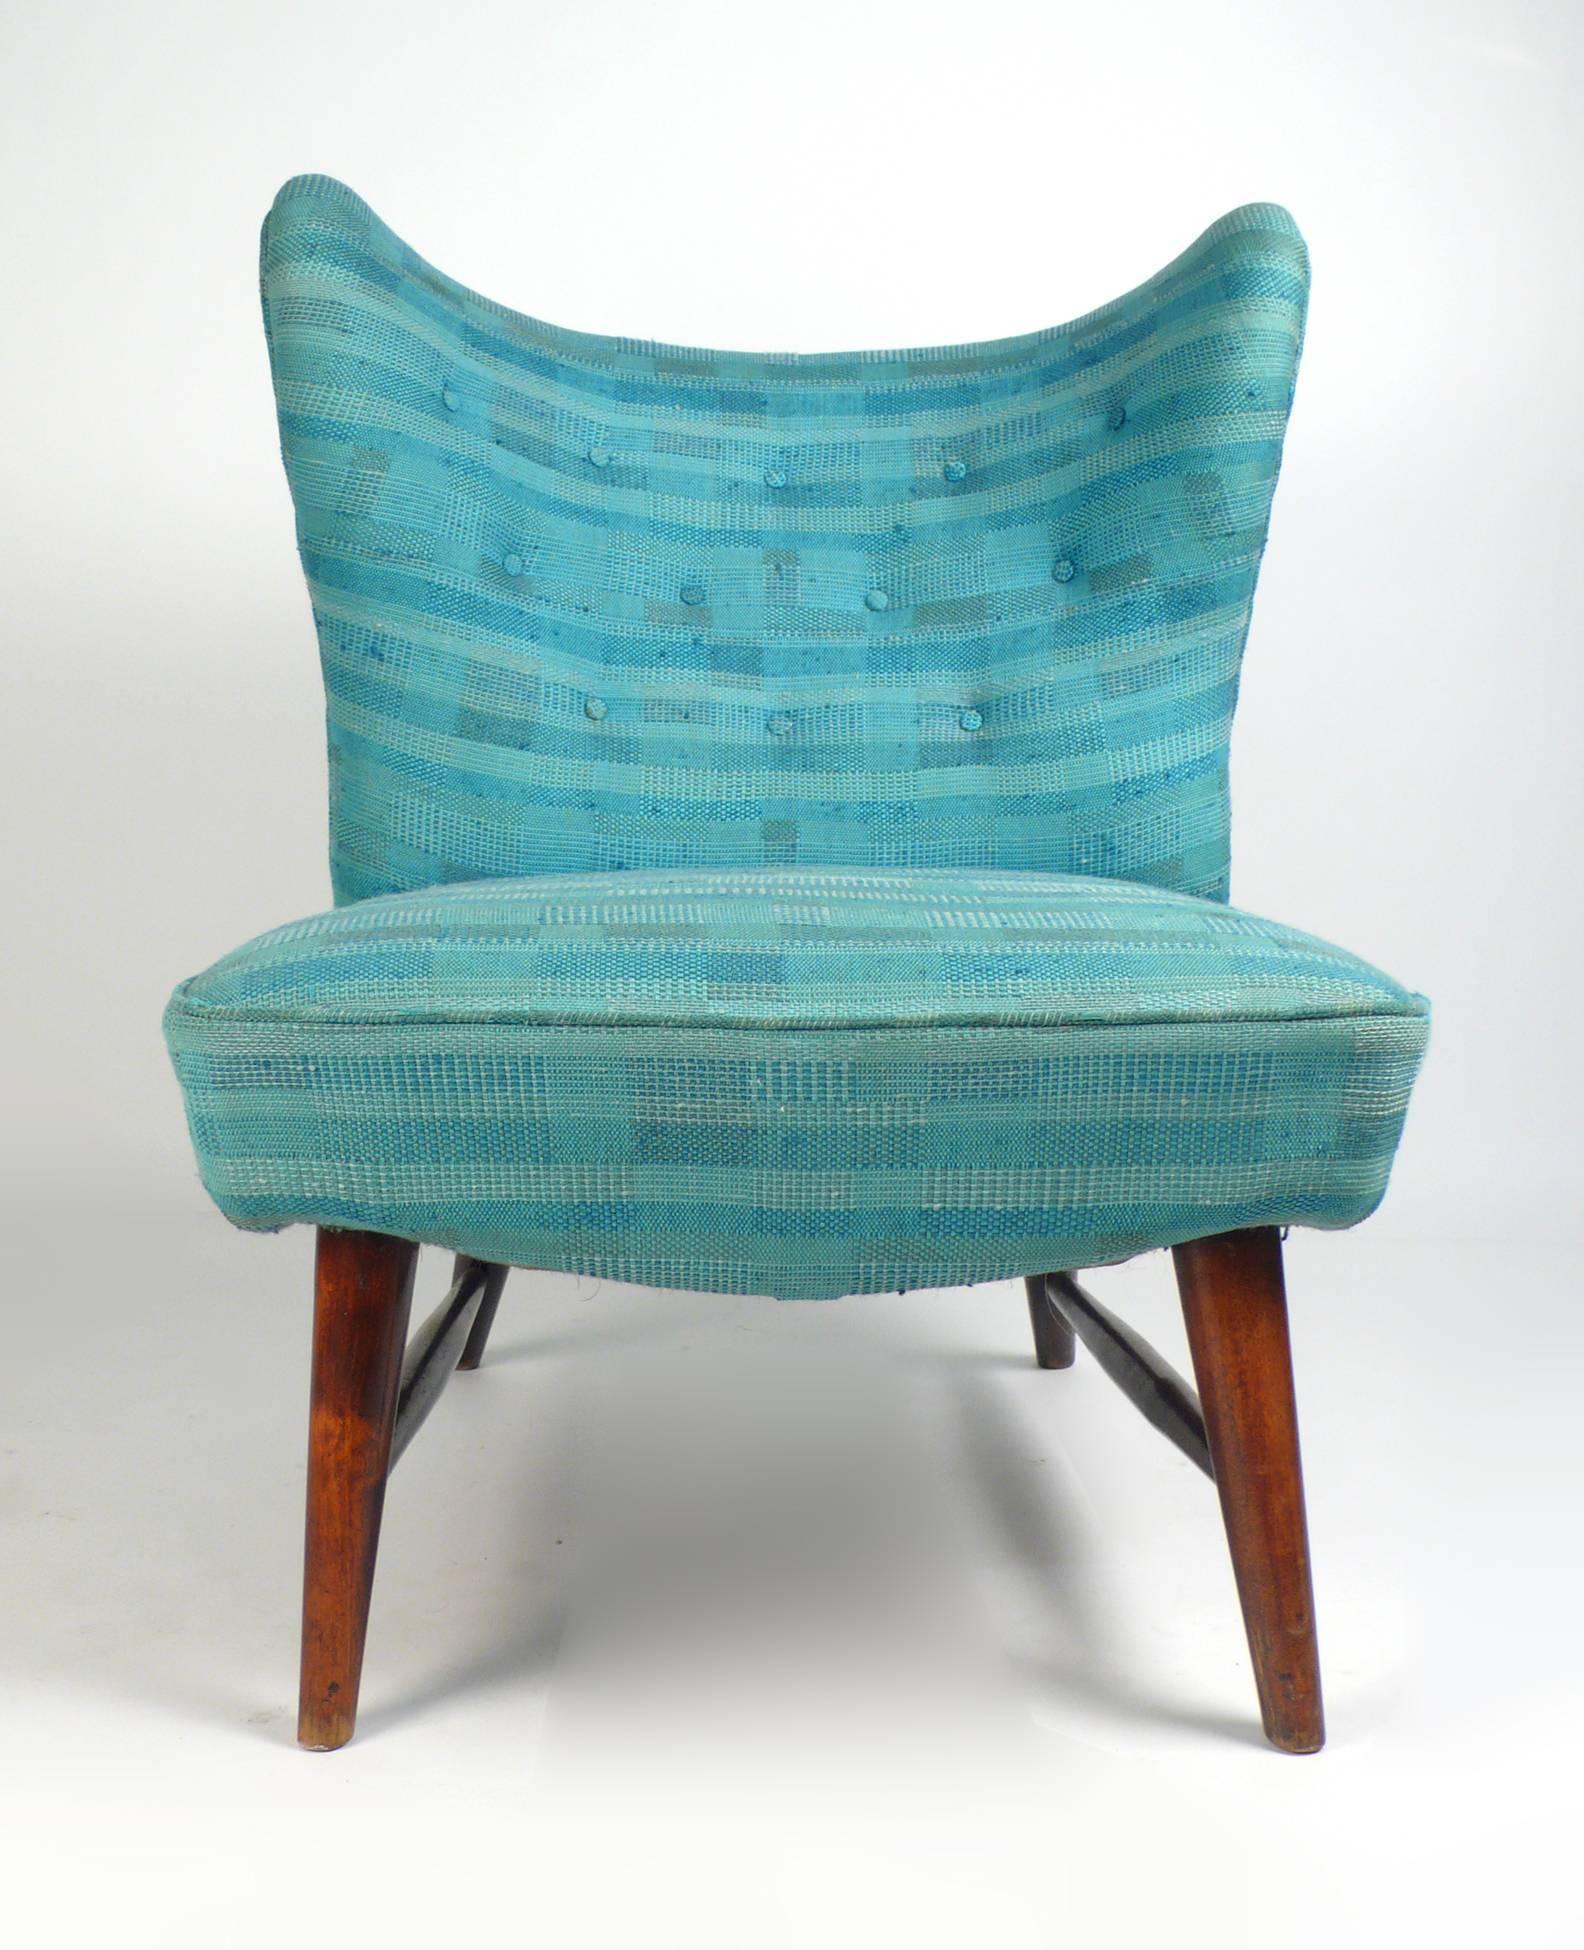 Seltener und bedeutender 201 armloser Stuhl von Elias Svedberg für Nordiska Kompaniet -1947 importiert von Knoll International. Der 201 armlose Stuhl wurde 1947 - 1951 in Schweden hergestellt und ist in sehr gutem Zustand mit der Originalpolsterung.